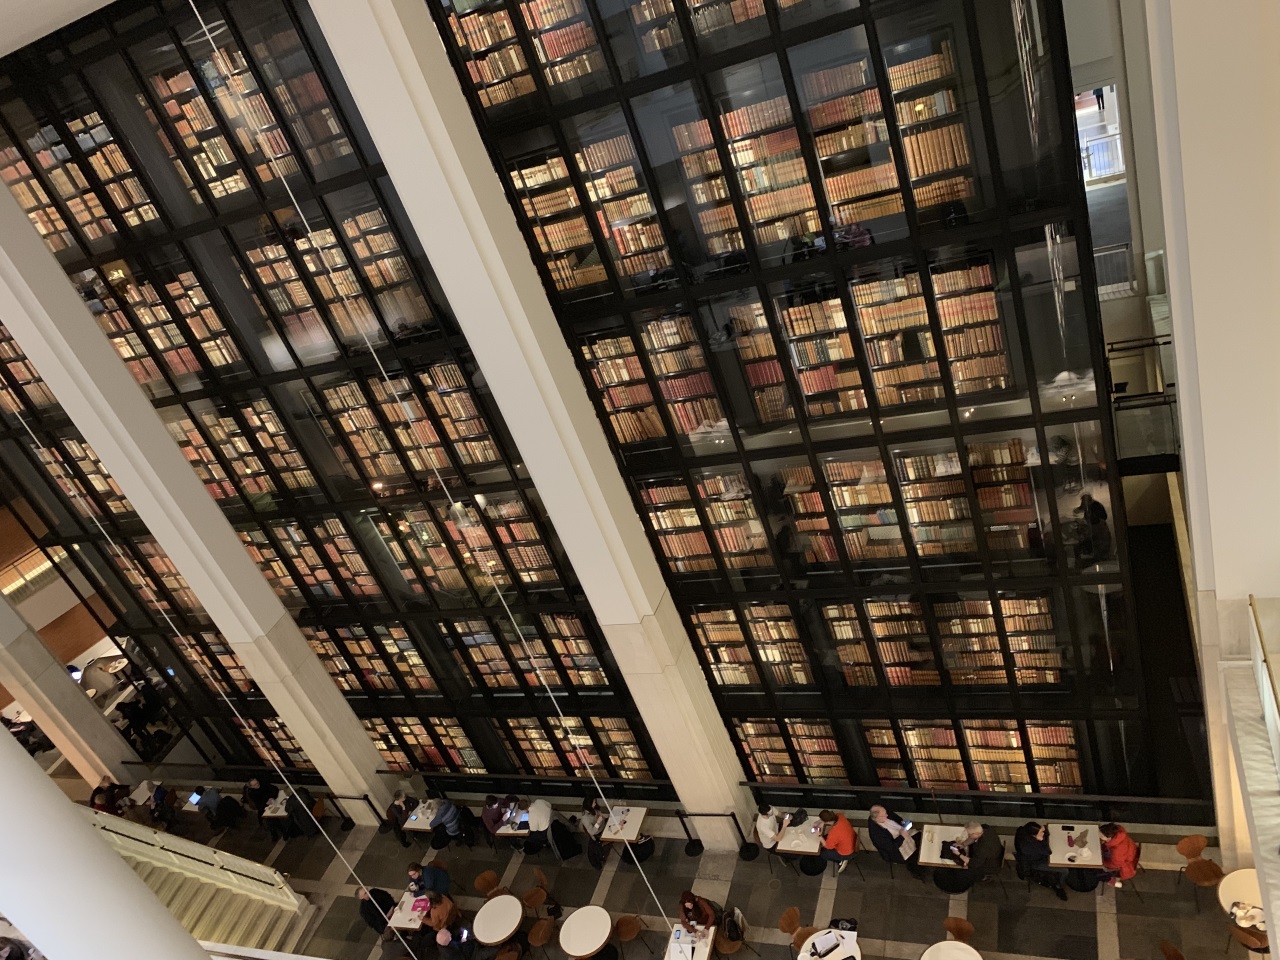 世界最大級の図書館、大英図書館が持つ美しい本のタワー【British Library】現地ルポ